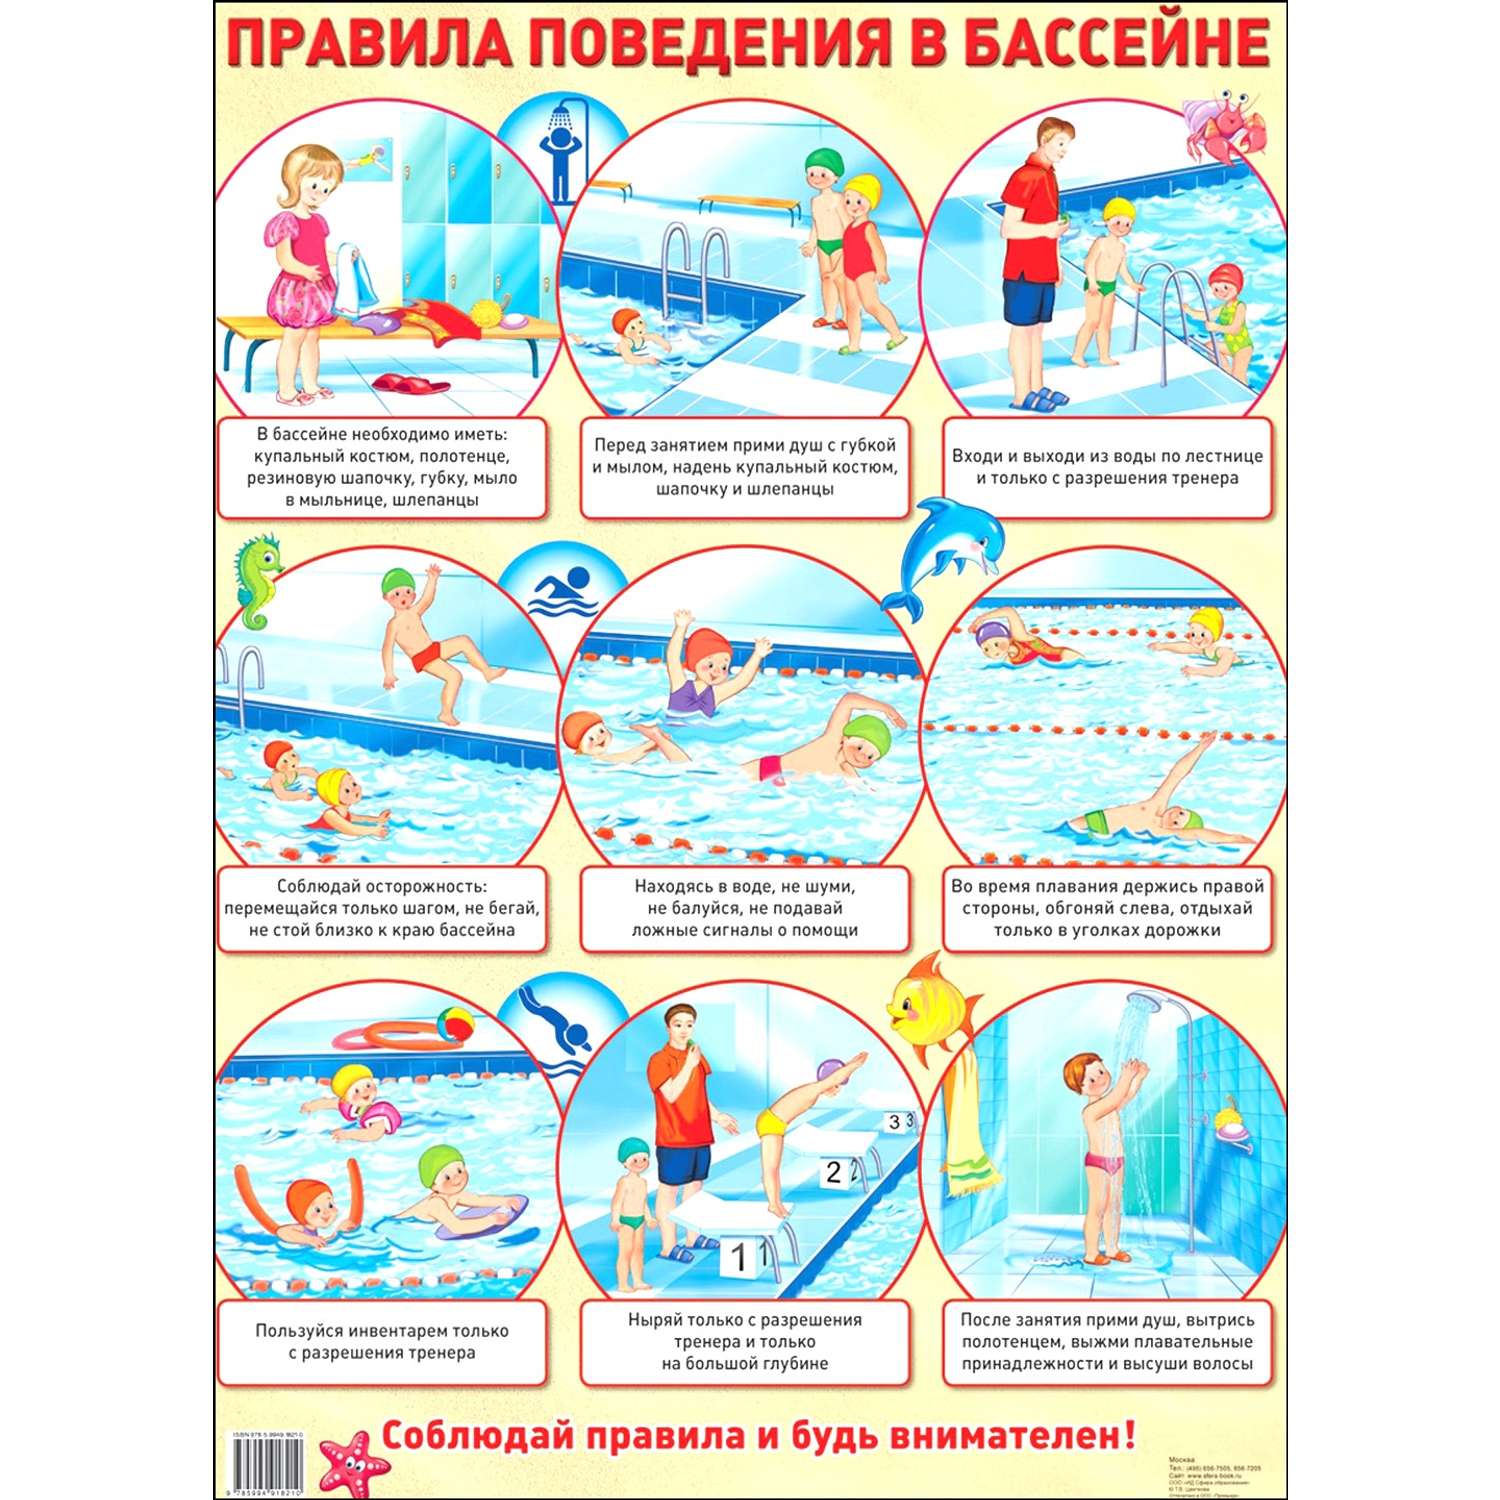 правила поведения в бассейне картинки